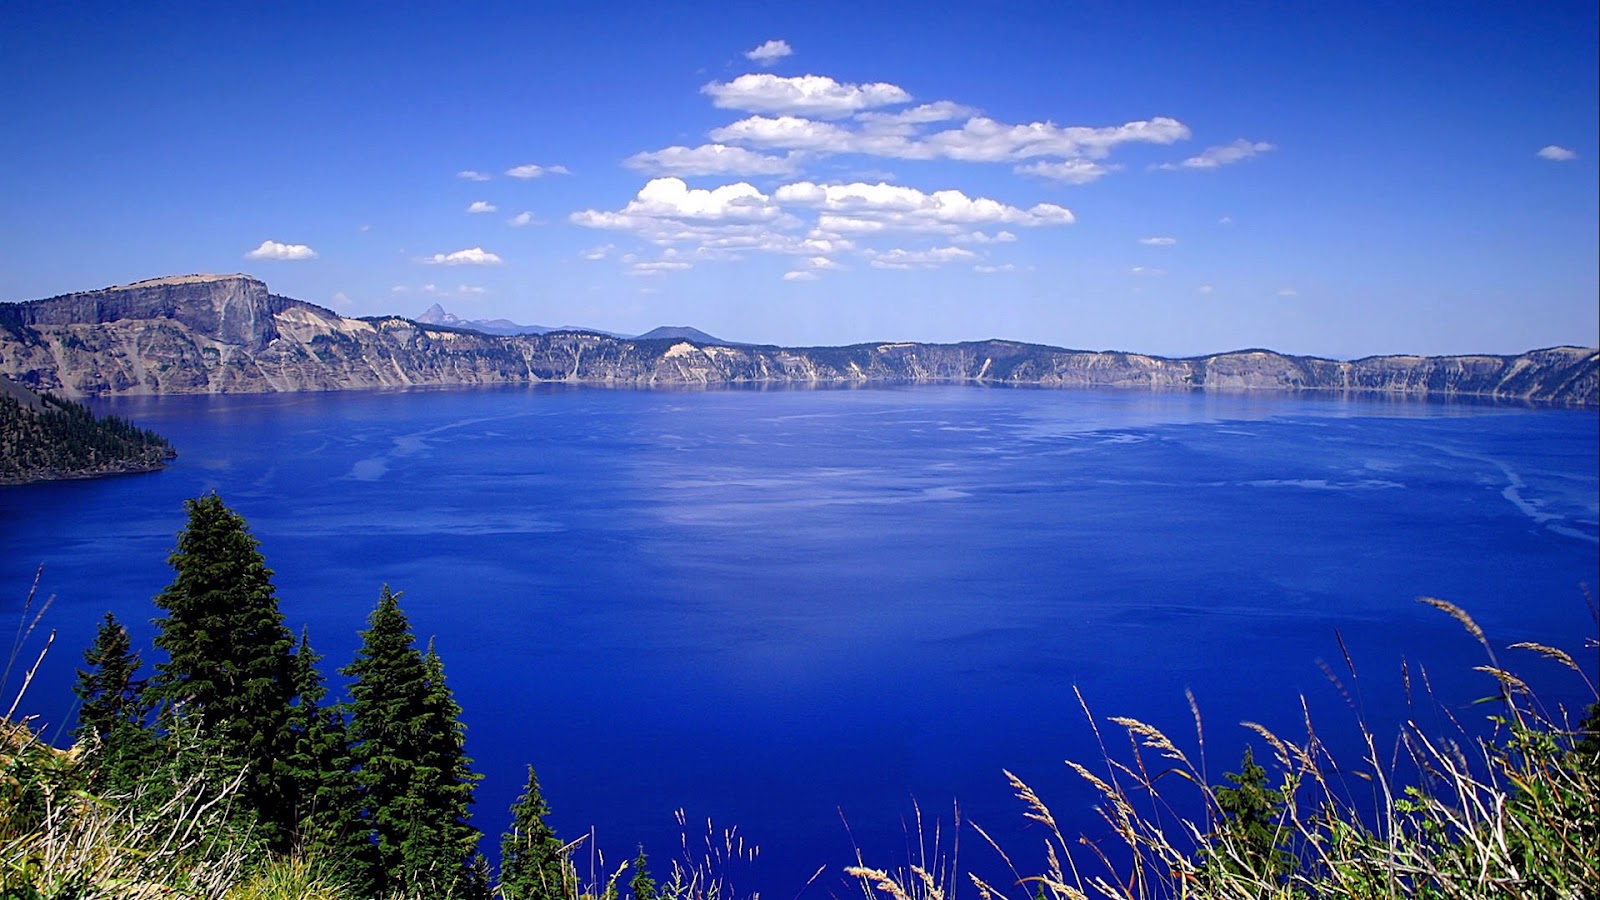 http://1.bp.blogspot.com/-gJQWjLtmXng/UEhWyvWefsI/AAAAAAAAA18/3VmlsX5Yhlw/s1600/beautiful-blue-lake-between-mountain-full-HD-nature-background-wallpaper-for-laptop-widescreen.jpg